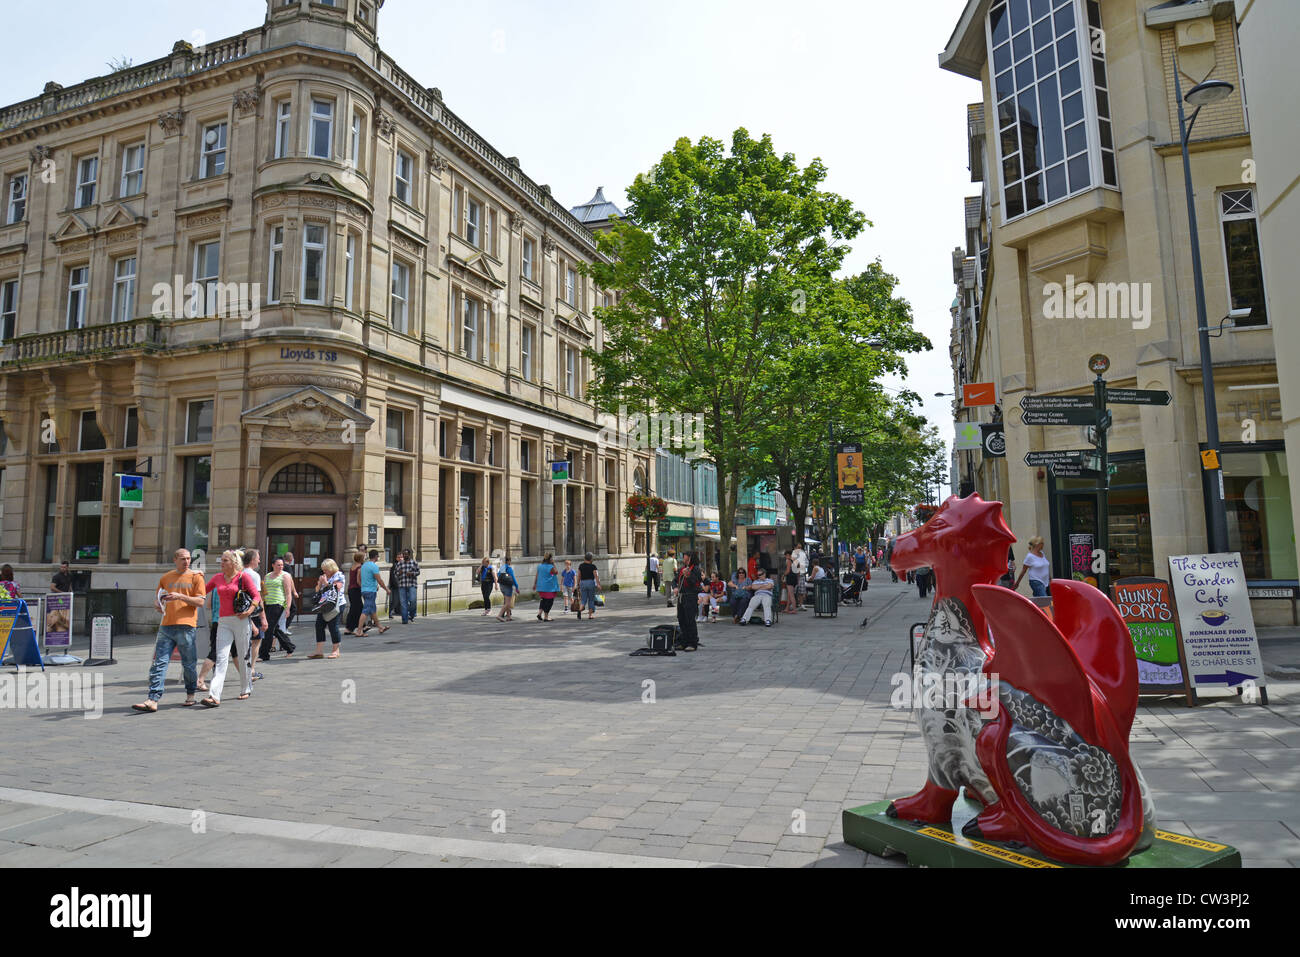 Commercial Street, City of Newport (Casnewydd), Wales (Cymru), United Kingdom Stock Photo